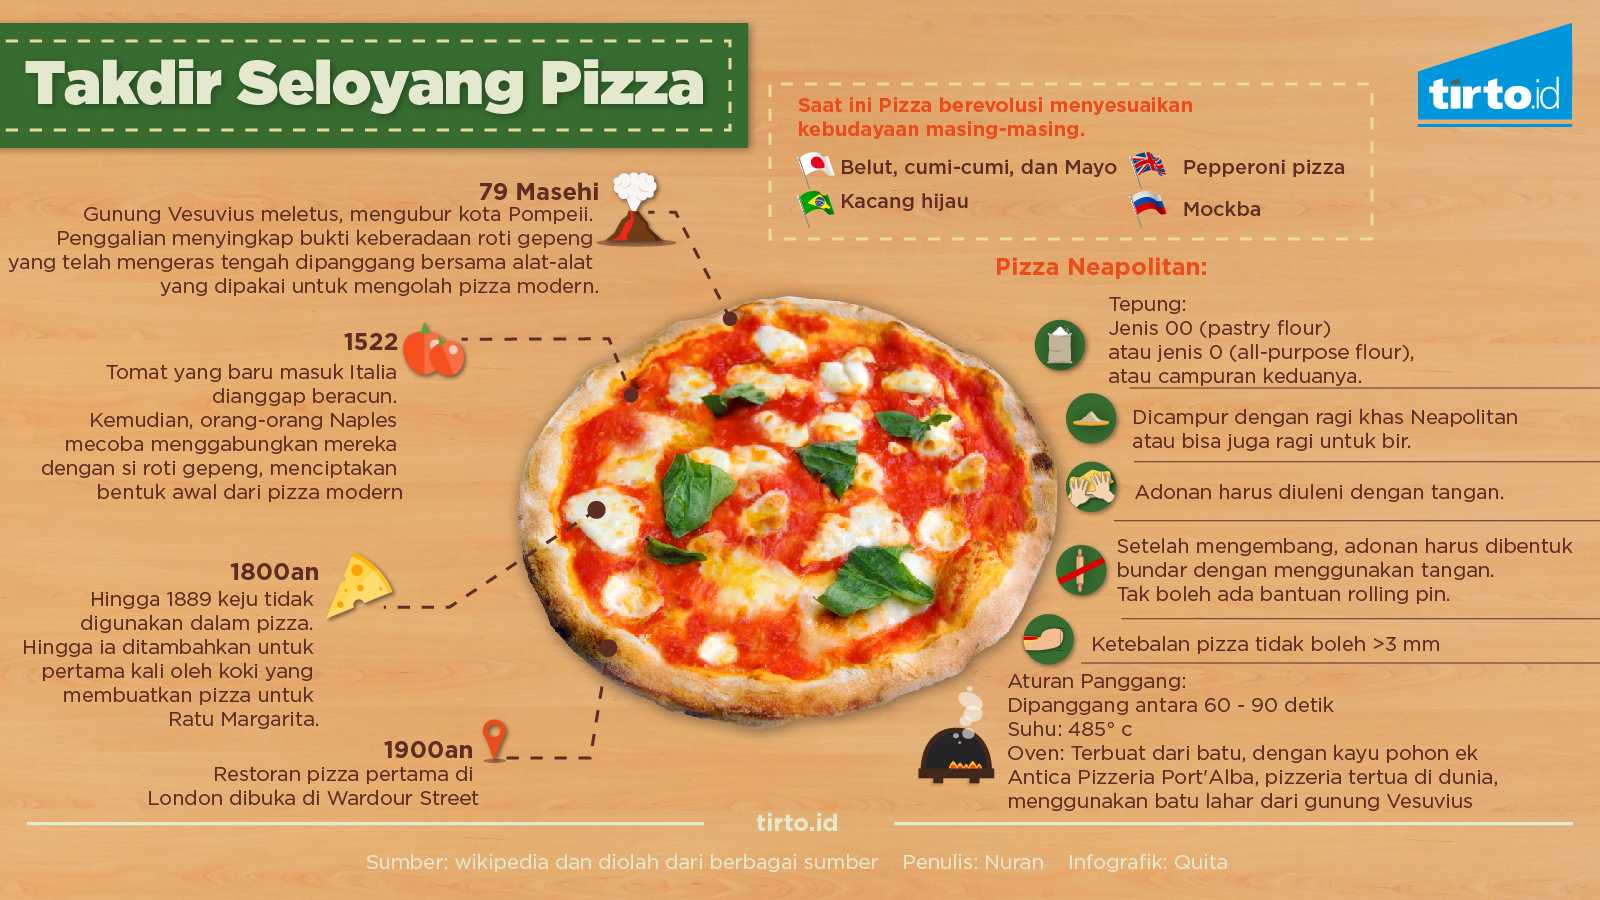 Пицца сколько дней в 1 главе. Рецепт приготовления пиццы пепперони. Технология приготовления пиццы пепперони. Рецепт пиццы пепперони картинки. Этапы приготовления пиццы.